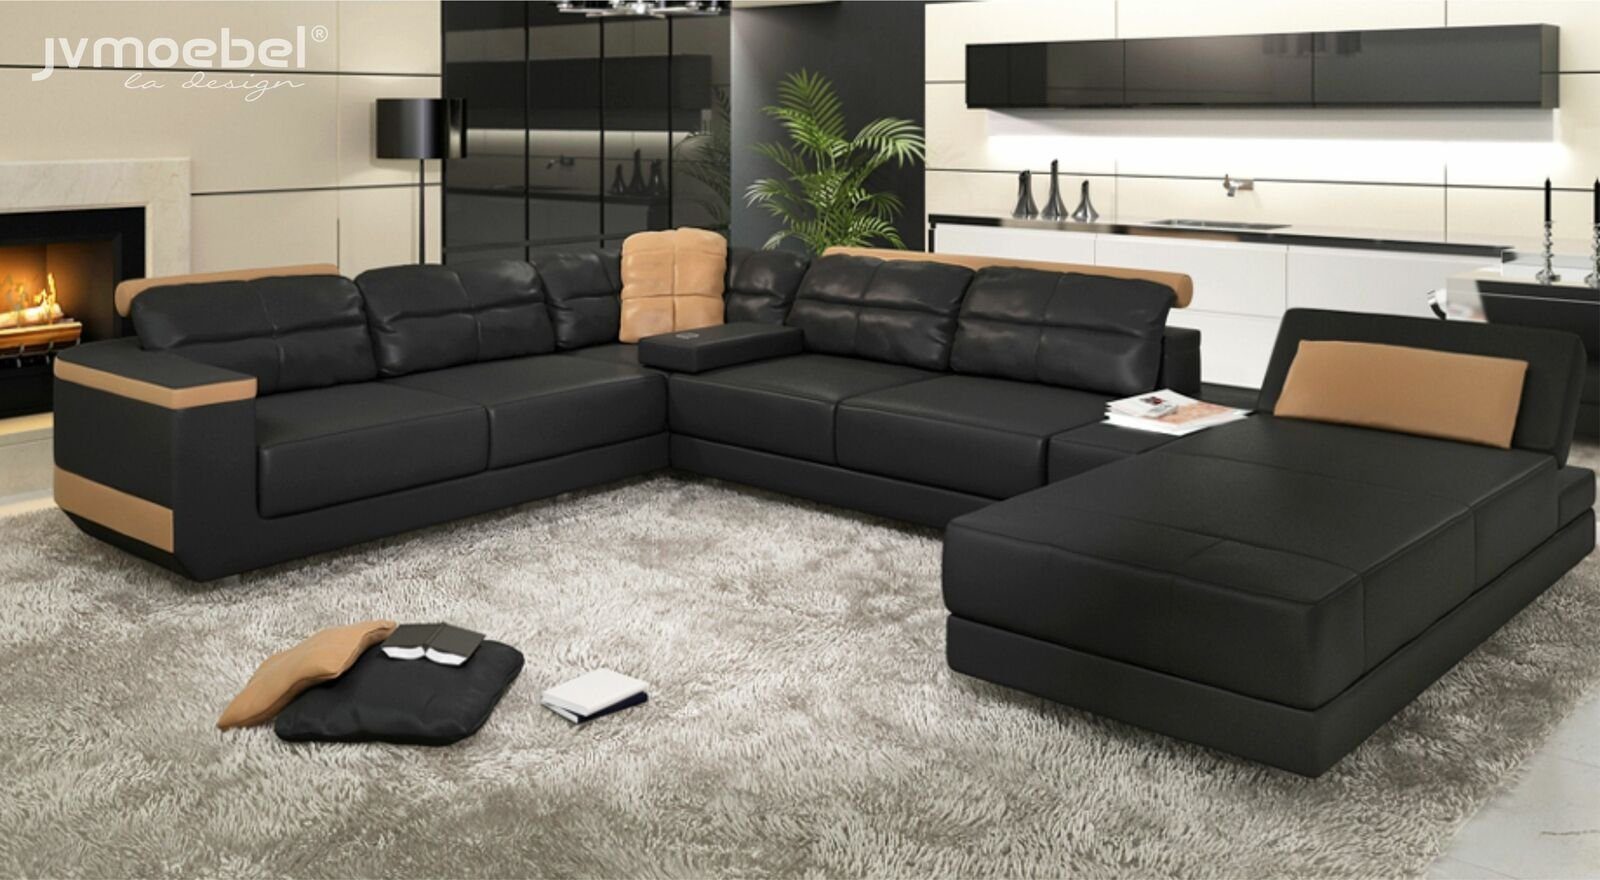 JVmoebel Ecksofa, Modern Sofas Wohnlandschaft Ecksofa Stoff U-Form Couch Design Polster Schwarz/Beige